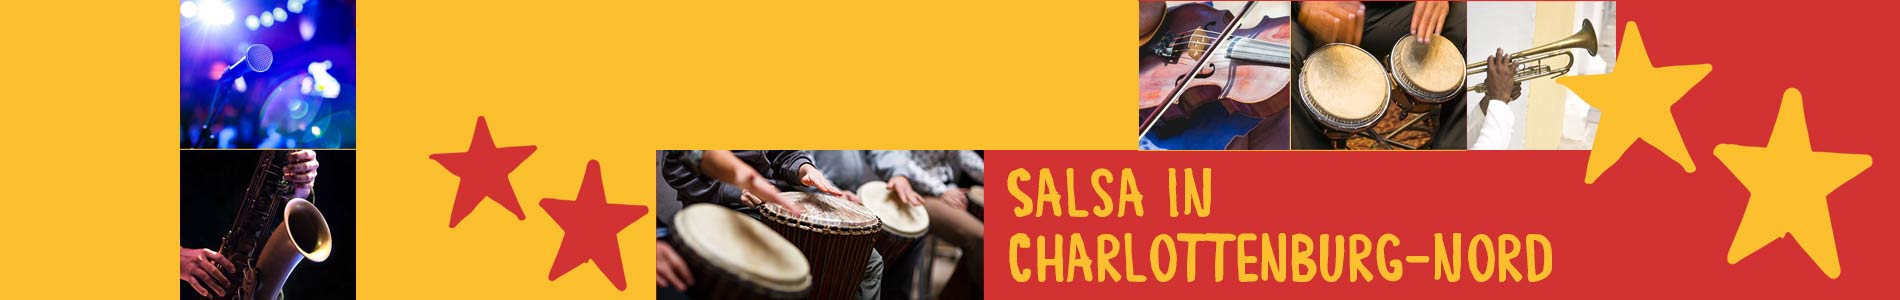 Salsa in Charlottenburg-Nord – Salsa lernen und tanzen, Tanzkurse, Partys, Veranstaltungen